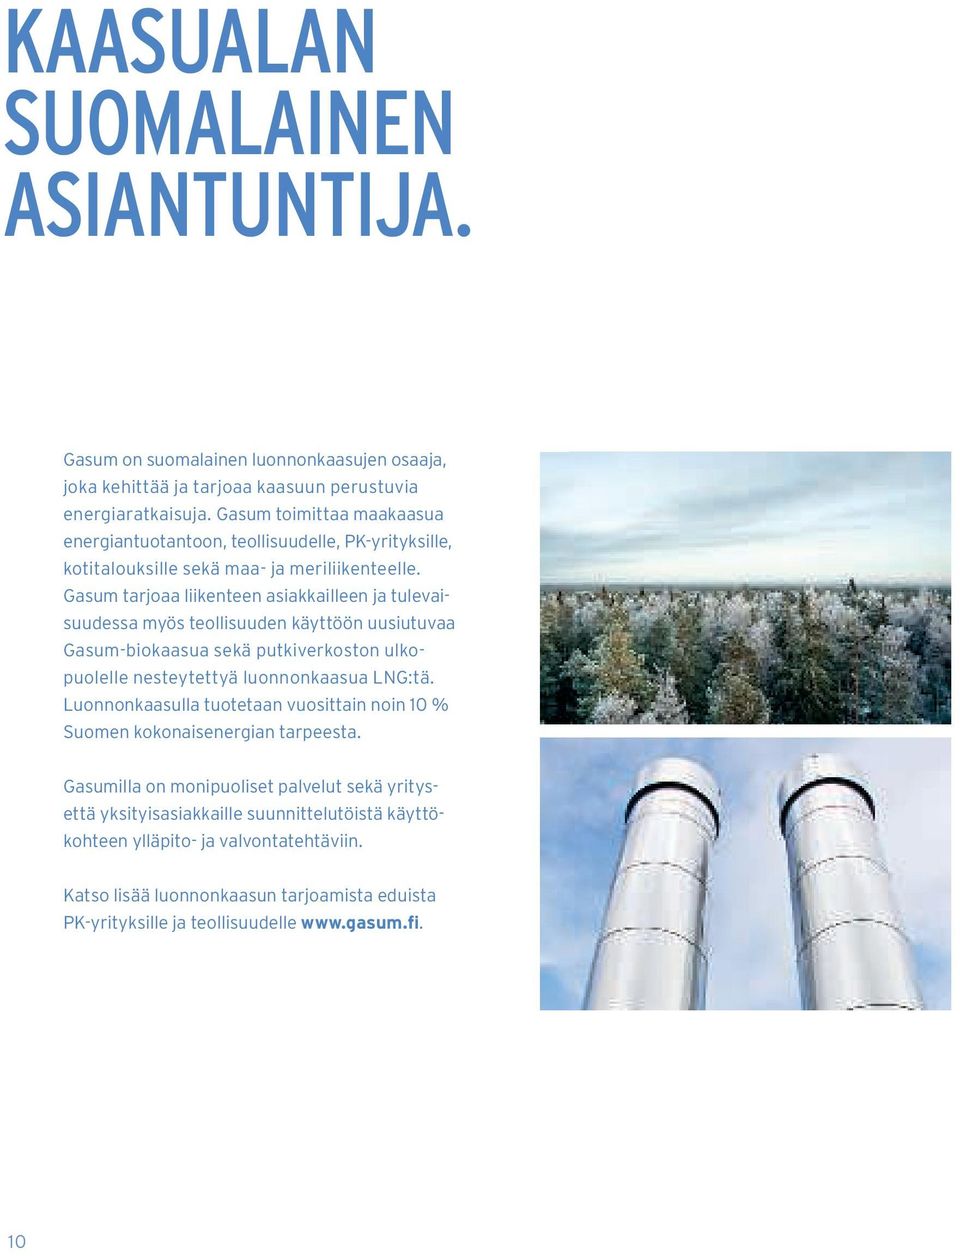 Gasum tarjoaa liikenteen asiakkailleen ja tulevaisuudessa myös teollisuuden käyttöön uusiutuvaa Gasum-biokaasua sekä putkiverkoston ulkopuolelle nesteytettyä luonnonkaasua LNG:tä.